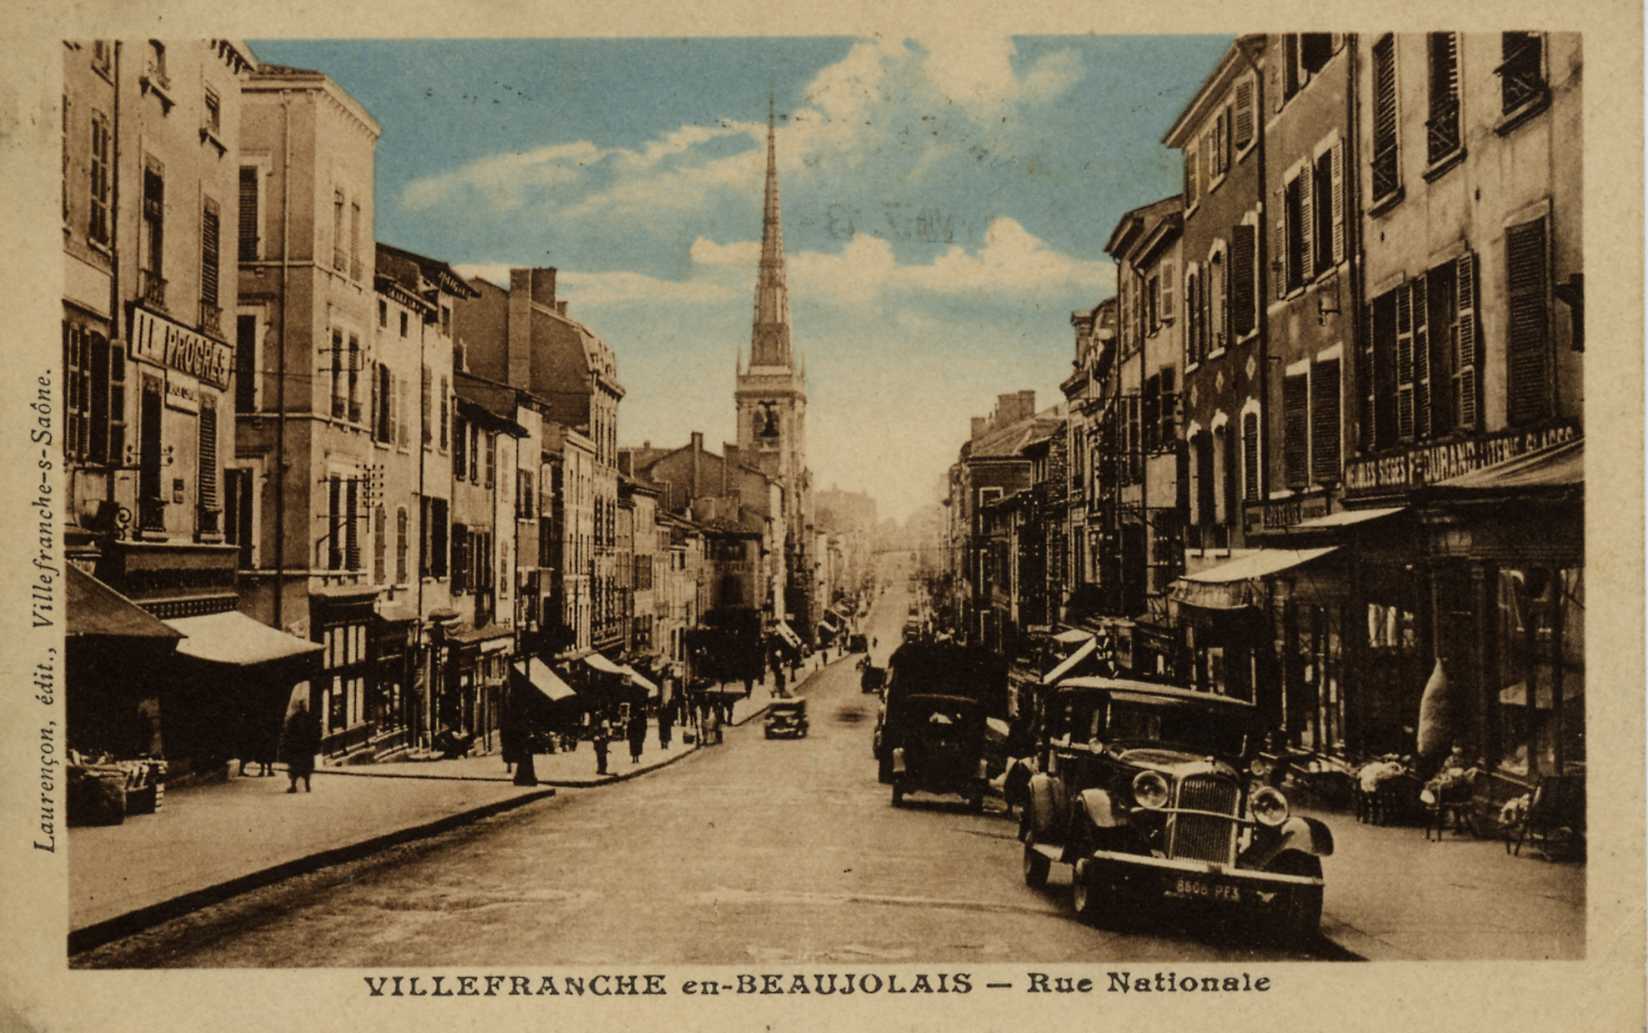 Villefranche en Beaujolais en 1937